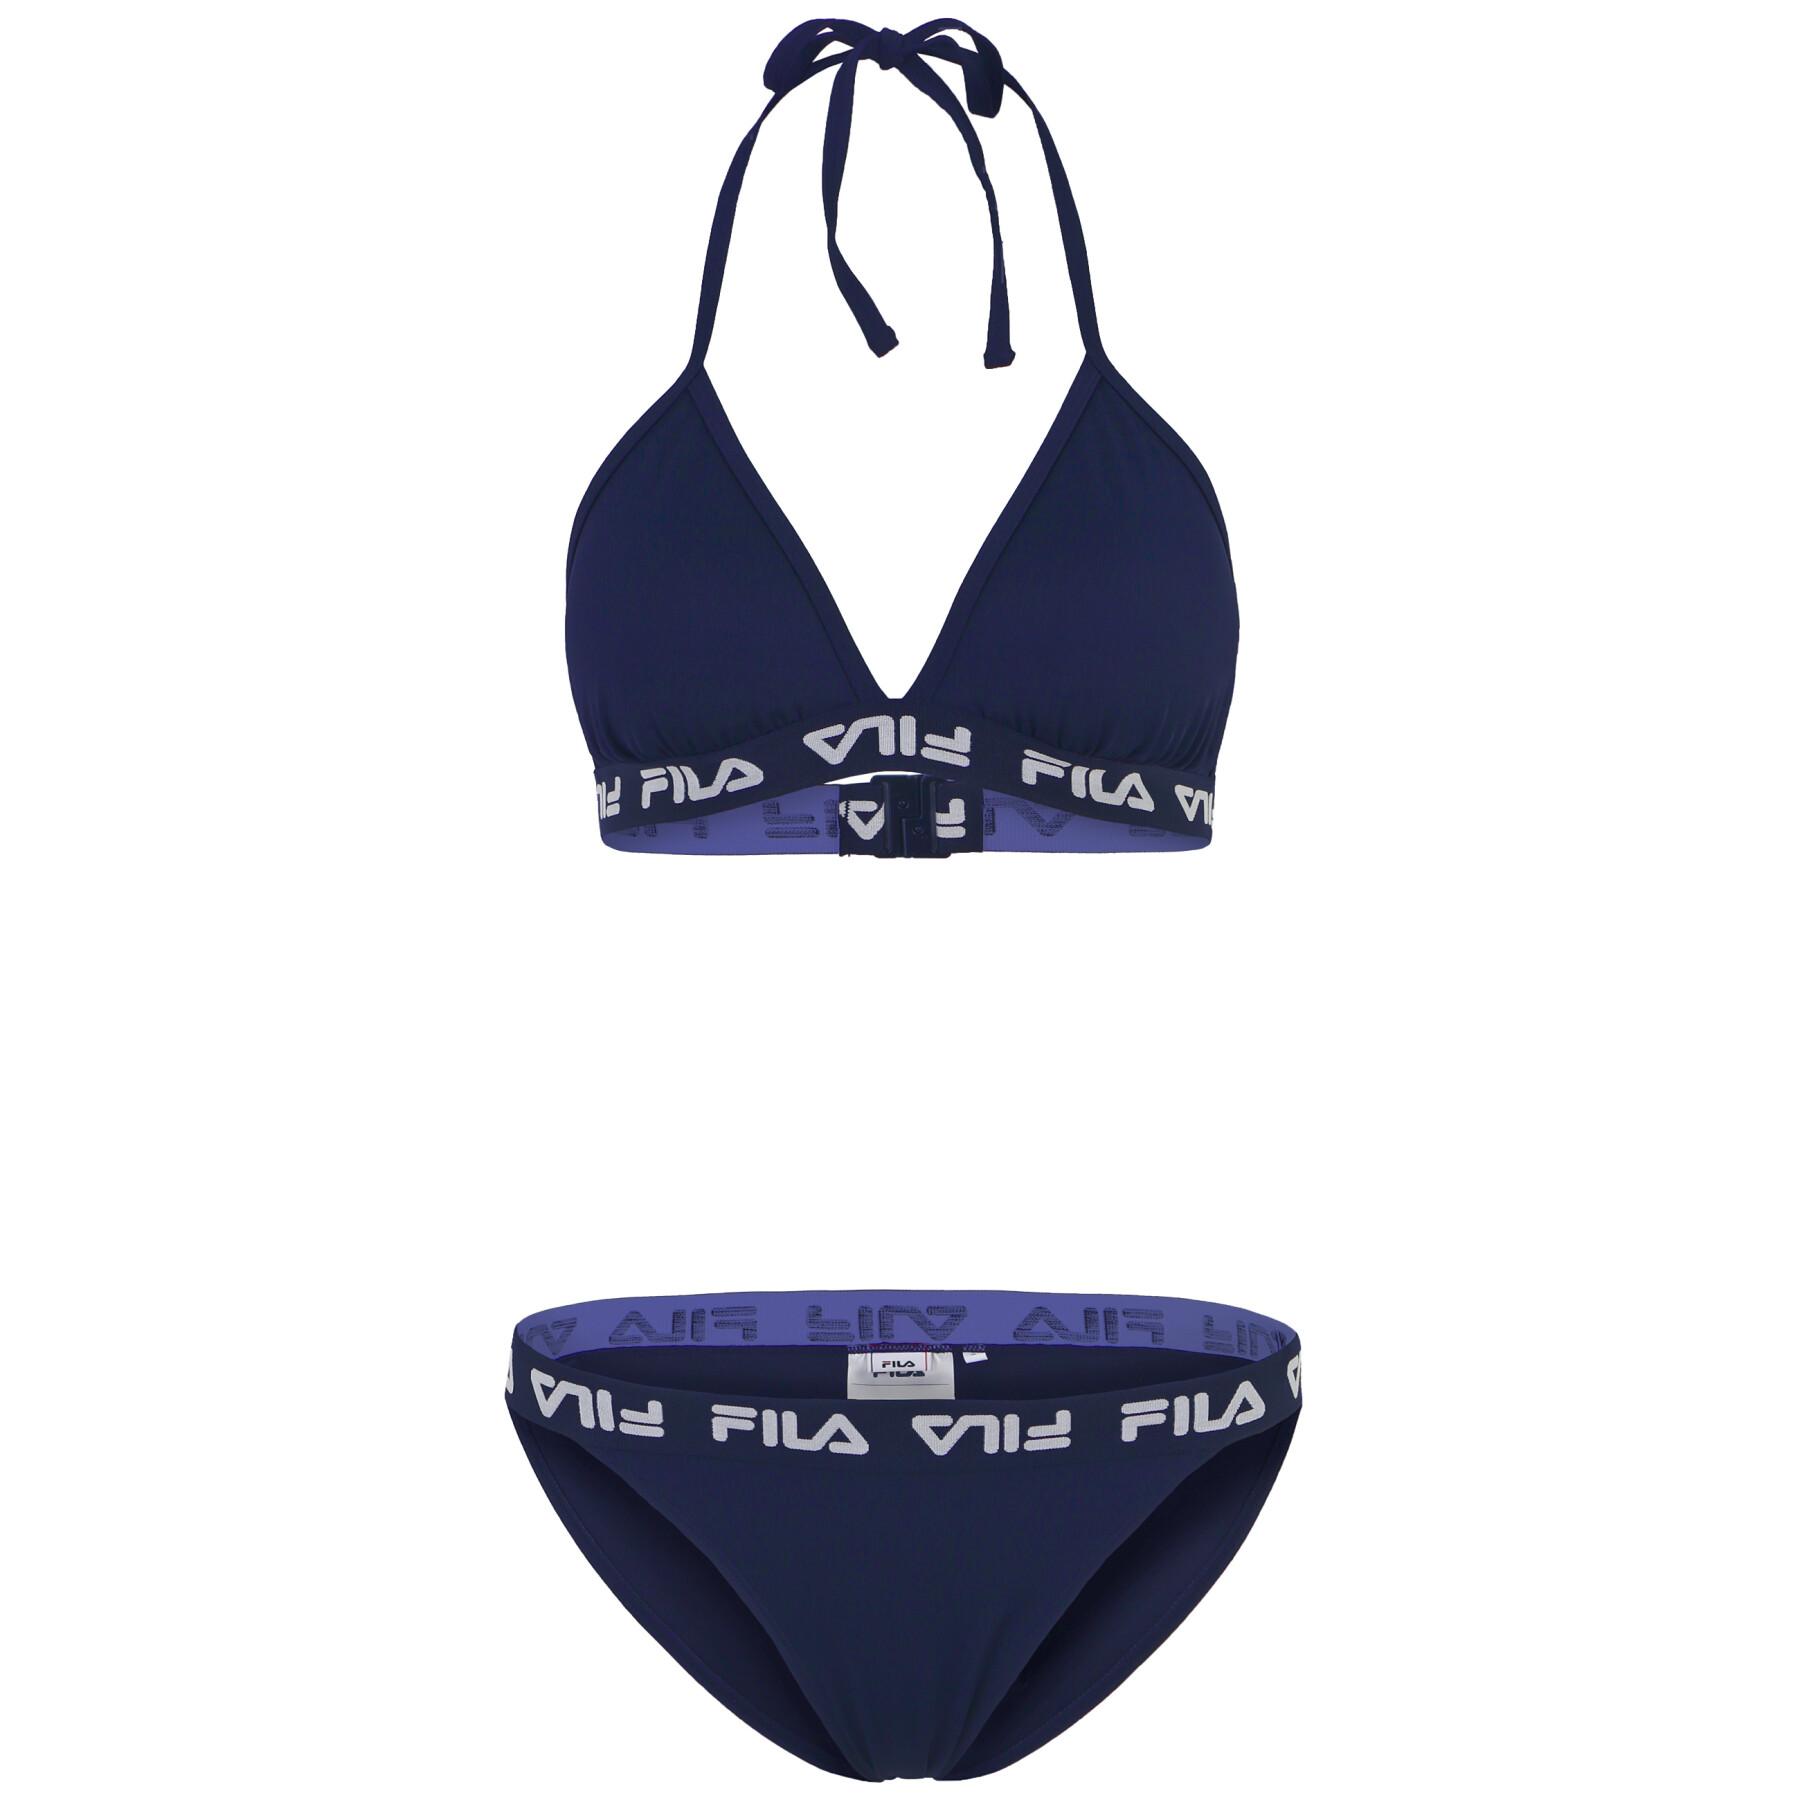 2-piece swimsuit for women Fila Split